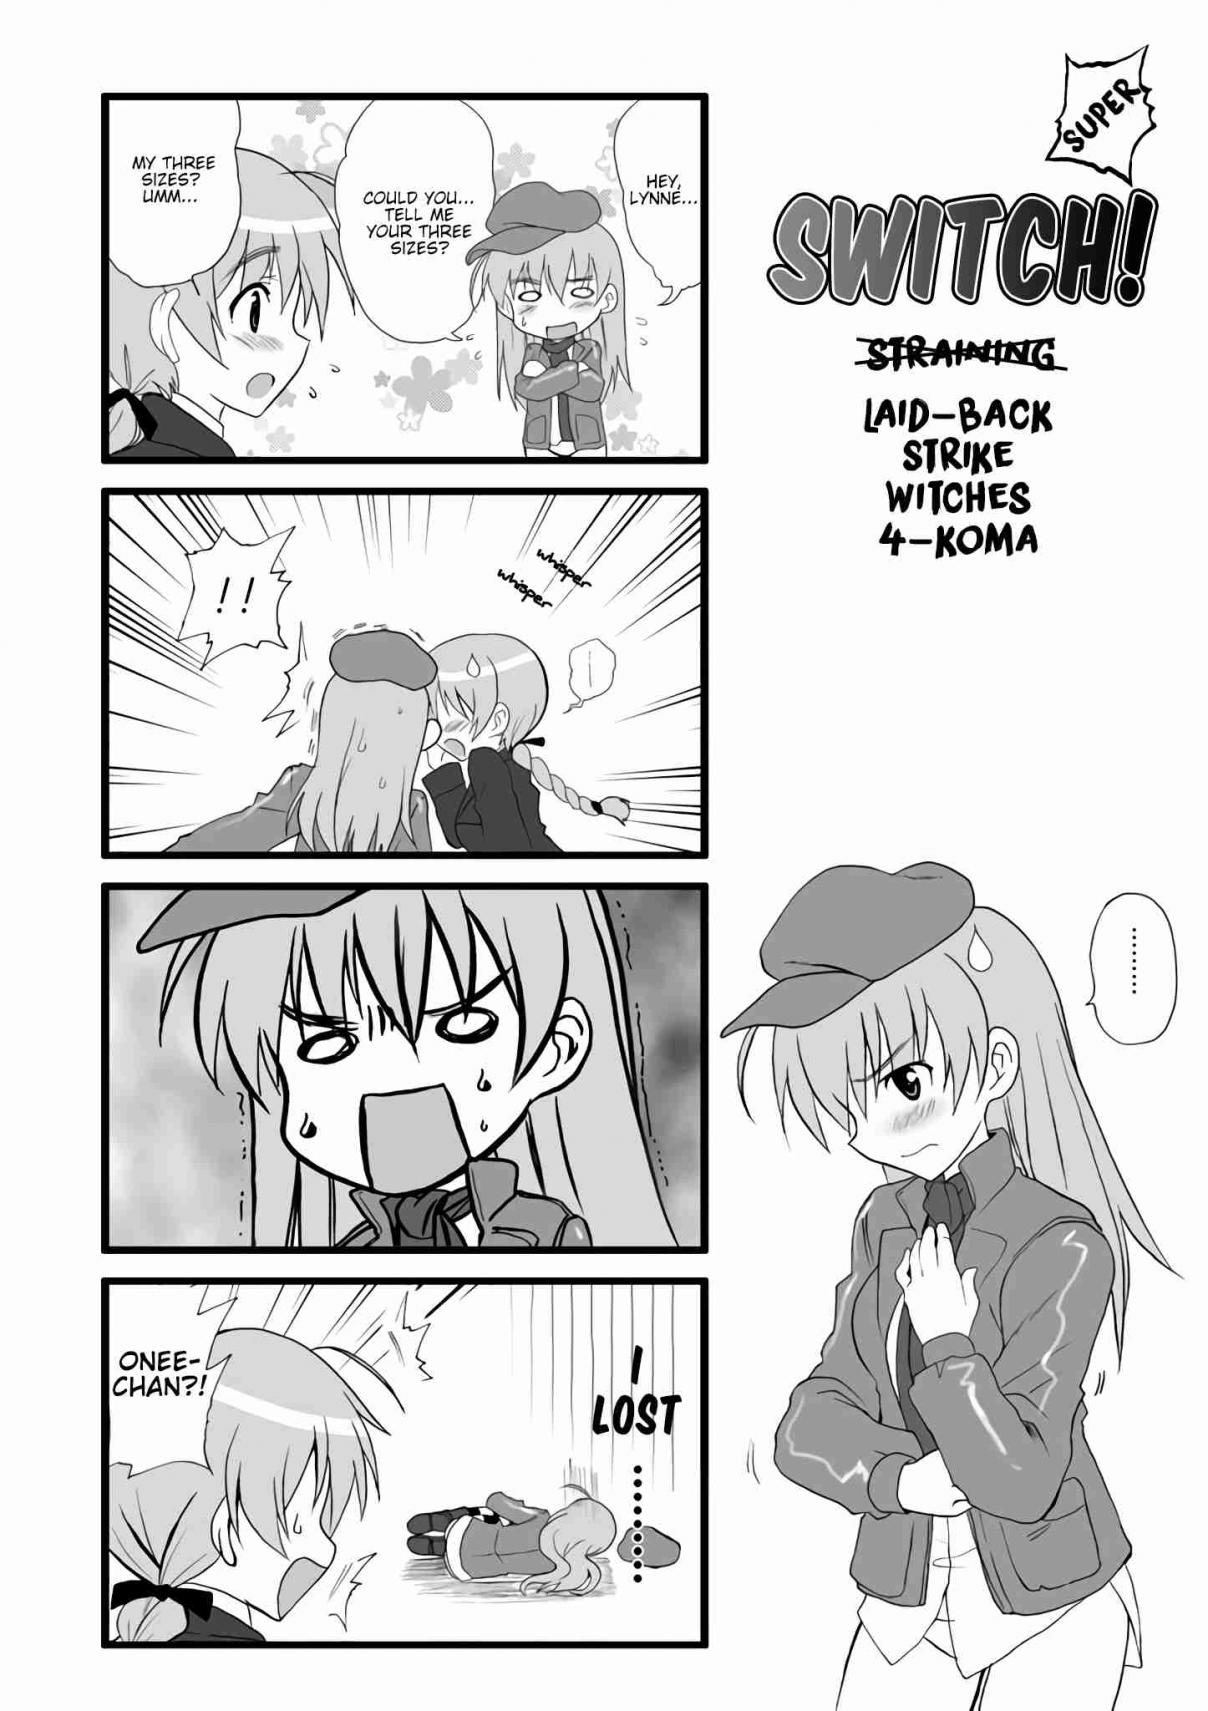 Strike Witches Kimi to Tsunagaru Sora Vol. 1 Ch. 8.5 Strike Witches 4 koma "Switch"